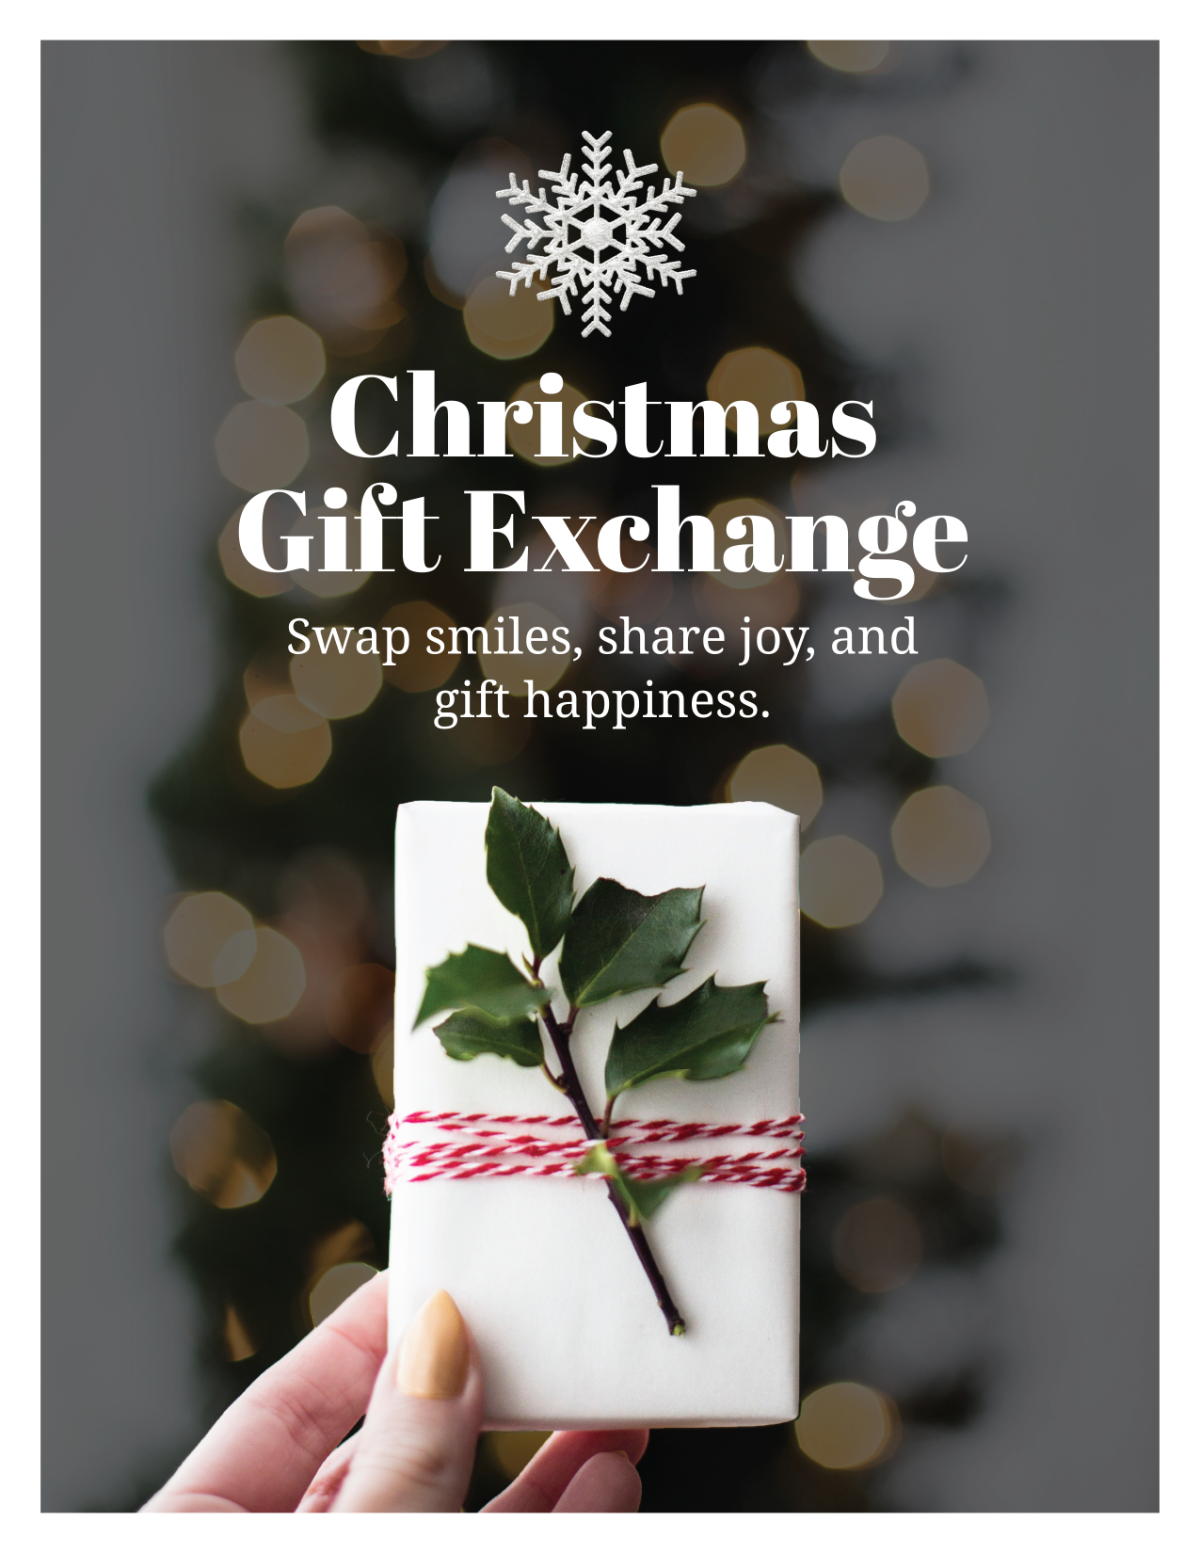 Christmas Gift Exchange Flyer